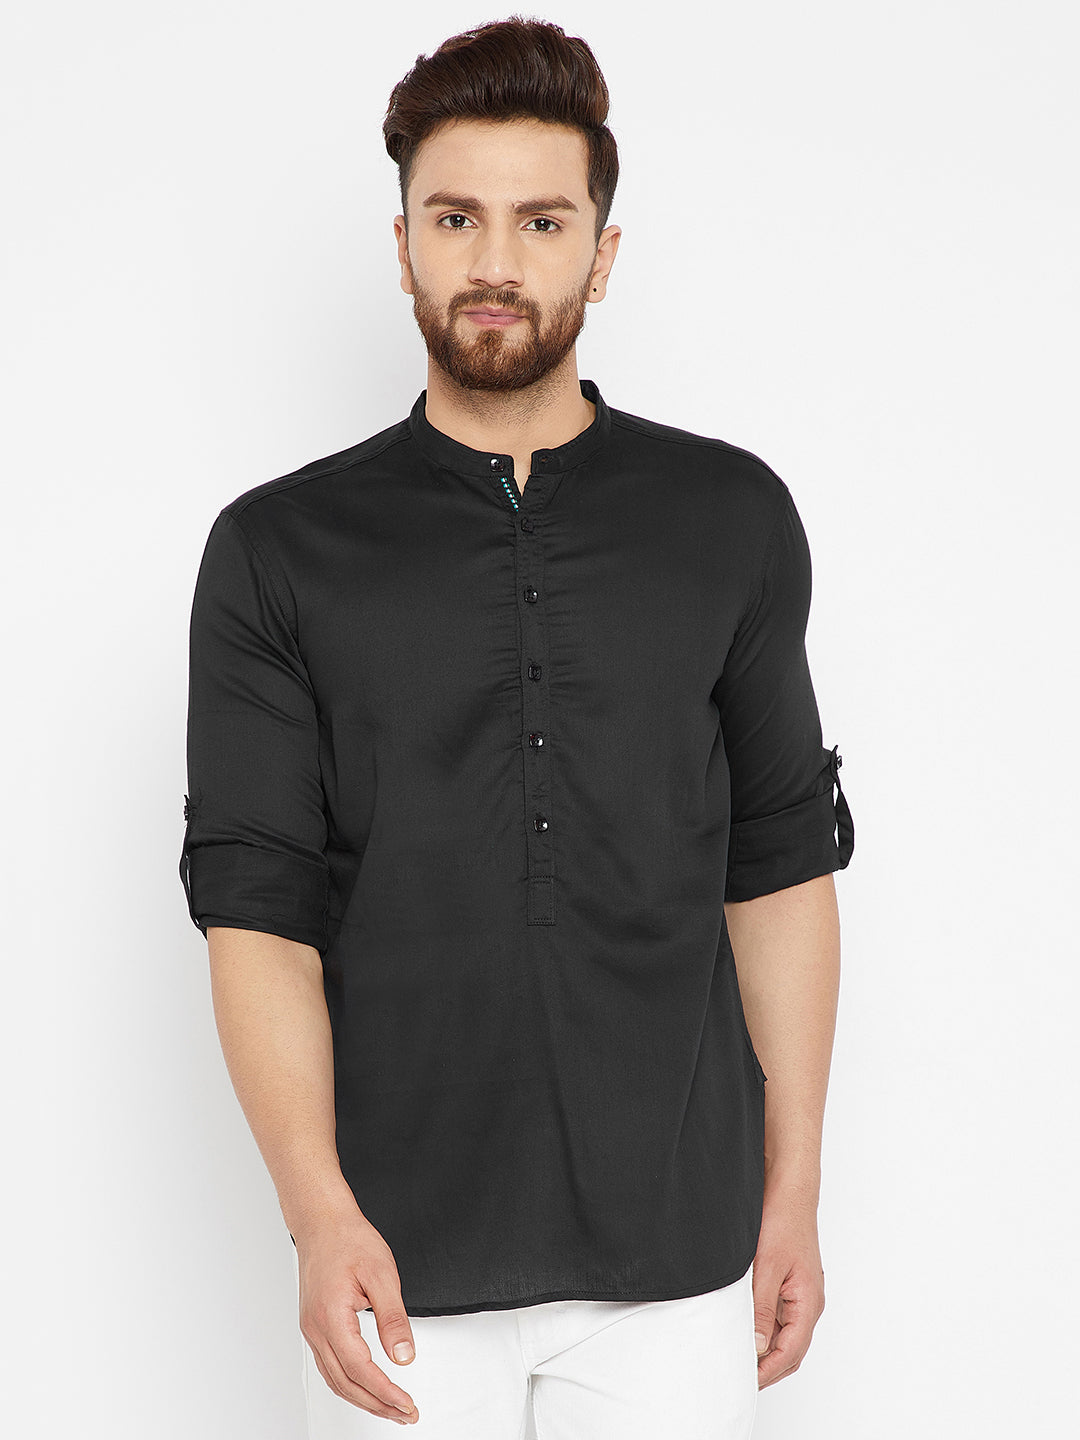 Men's Black Pure Cotton Solid Shirt Kurta - Even Apparels